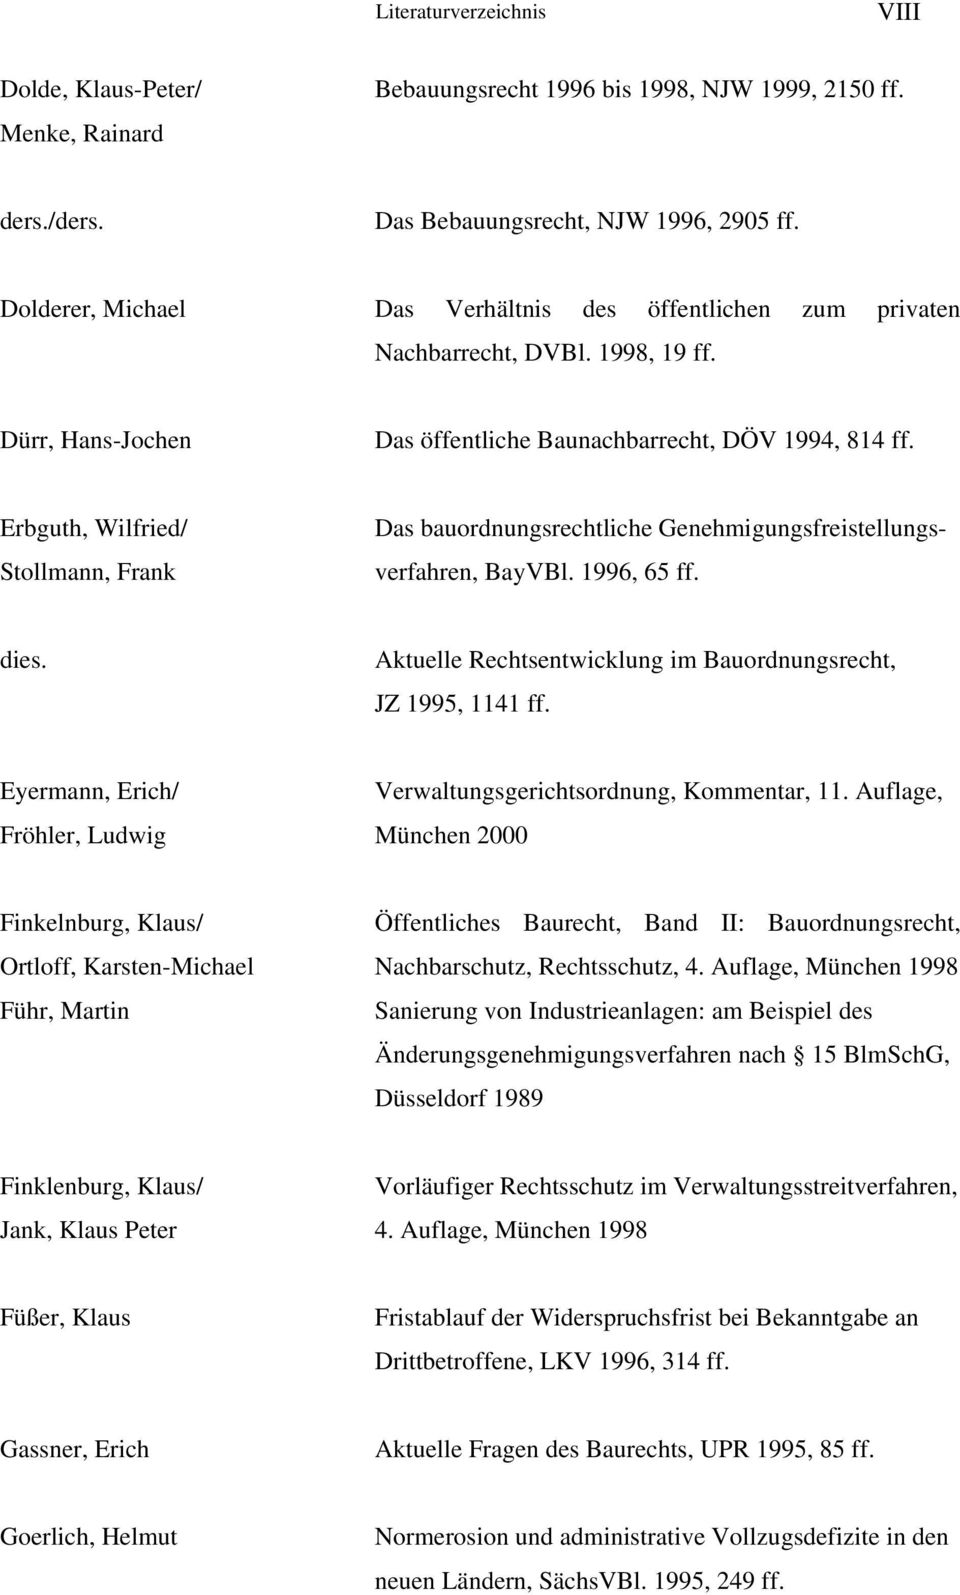 Erbguth, Wilfried/ Stollmann, Frank Das bauordnungsrechtliche Genehmigungsfreistellungs- verfahren, BayVBl. 1996, 65 ff. dies. Aktuelle Rechtsentwicklung im Bauordnungsrecht, JZ 1995, 1141 ff.